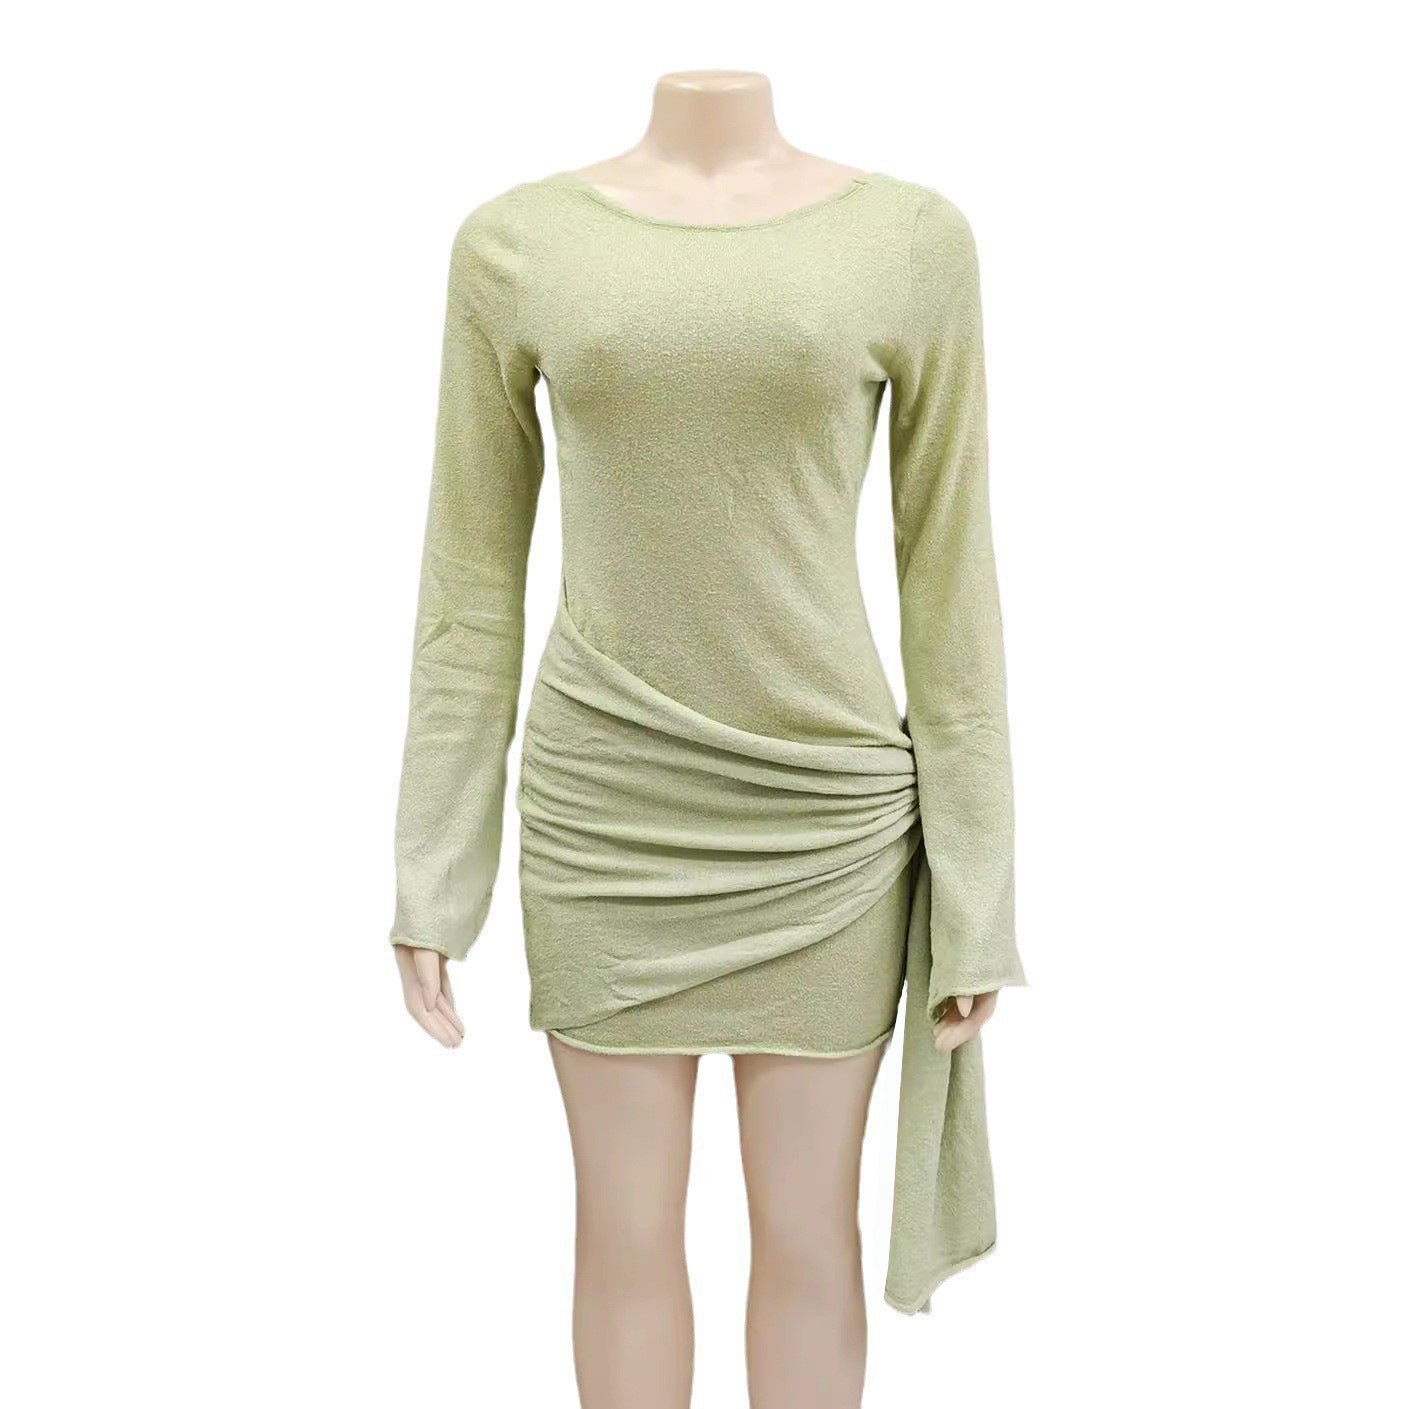 Modieuze gebreide jurk korte rok voor dames - NextthinkShop0CJLY206270106FU0